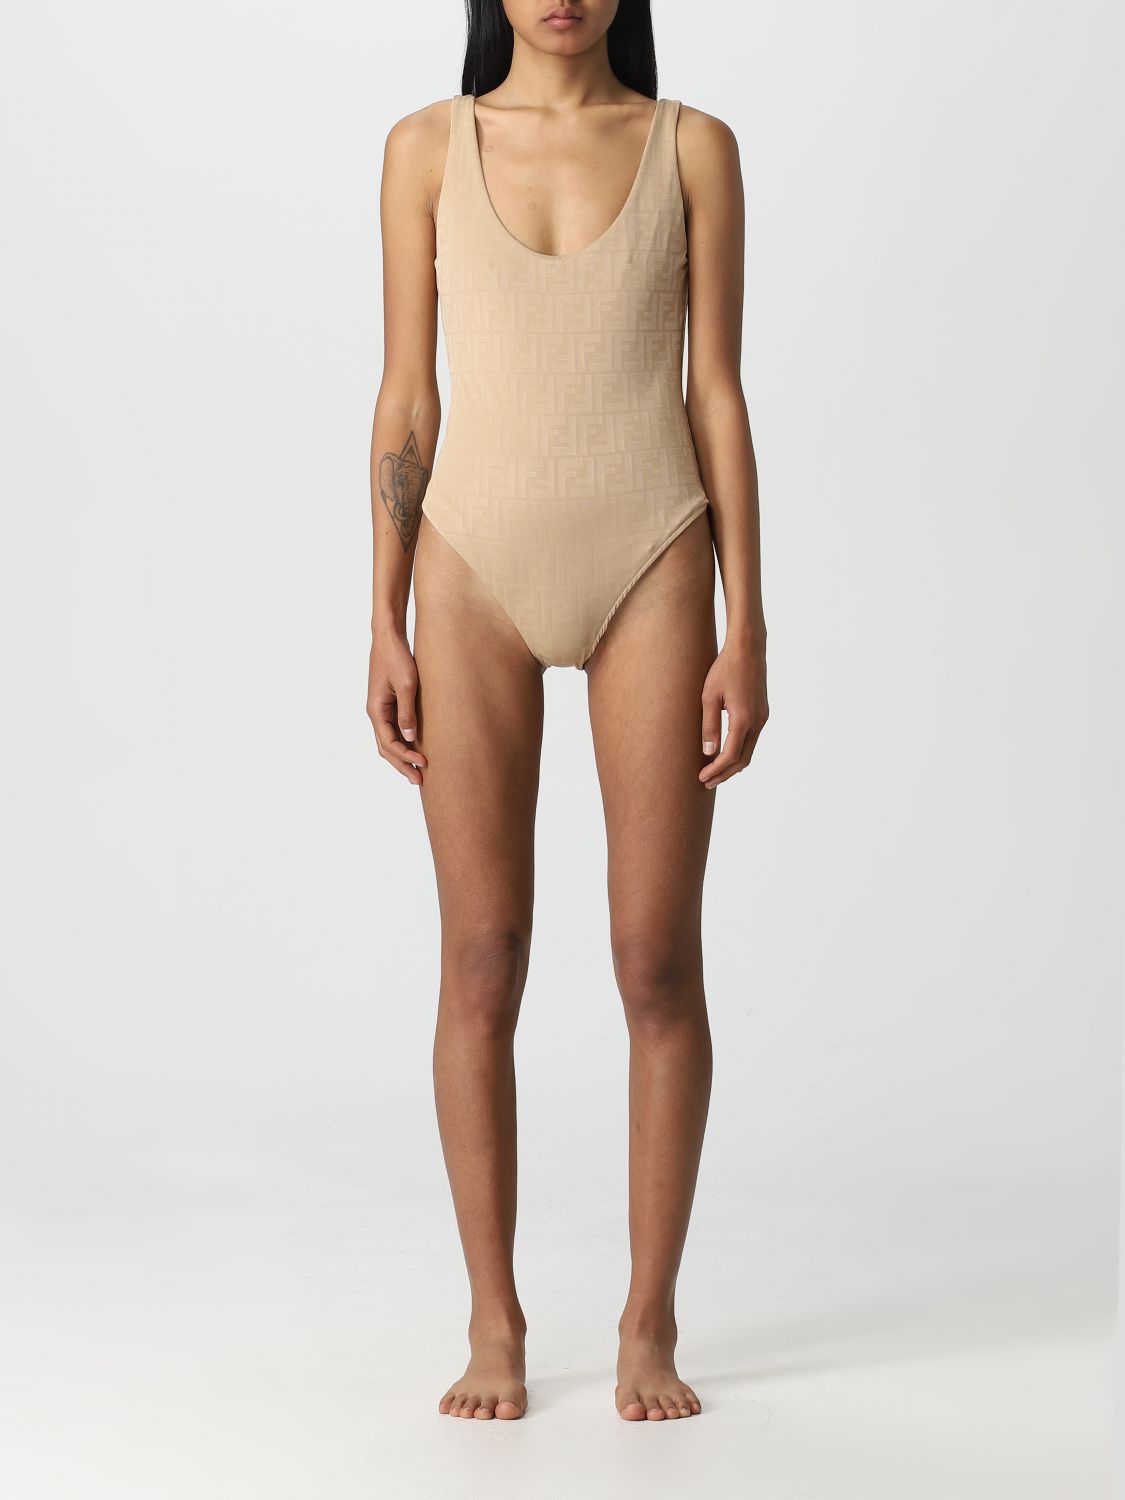 Fendi Women's Beige Swimsuit